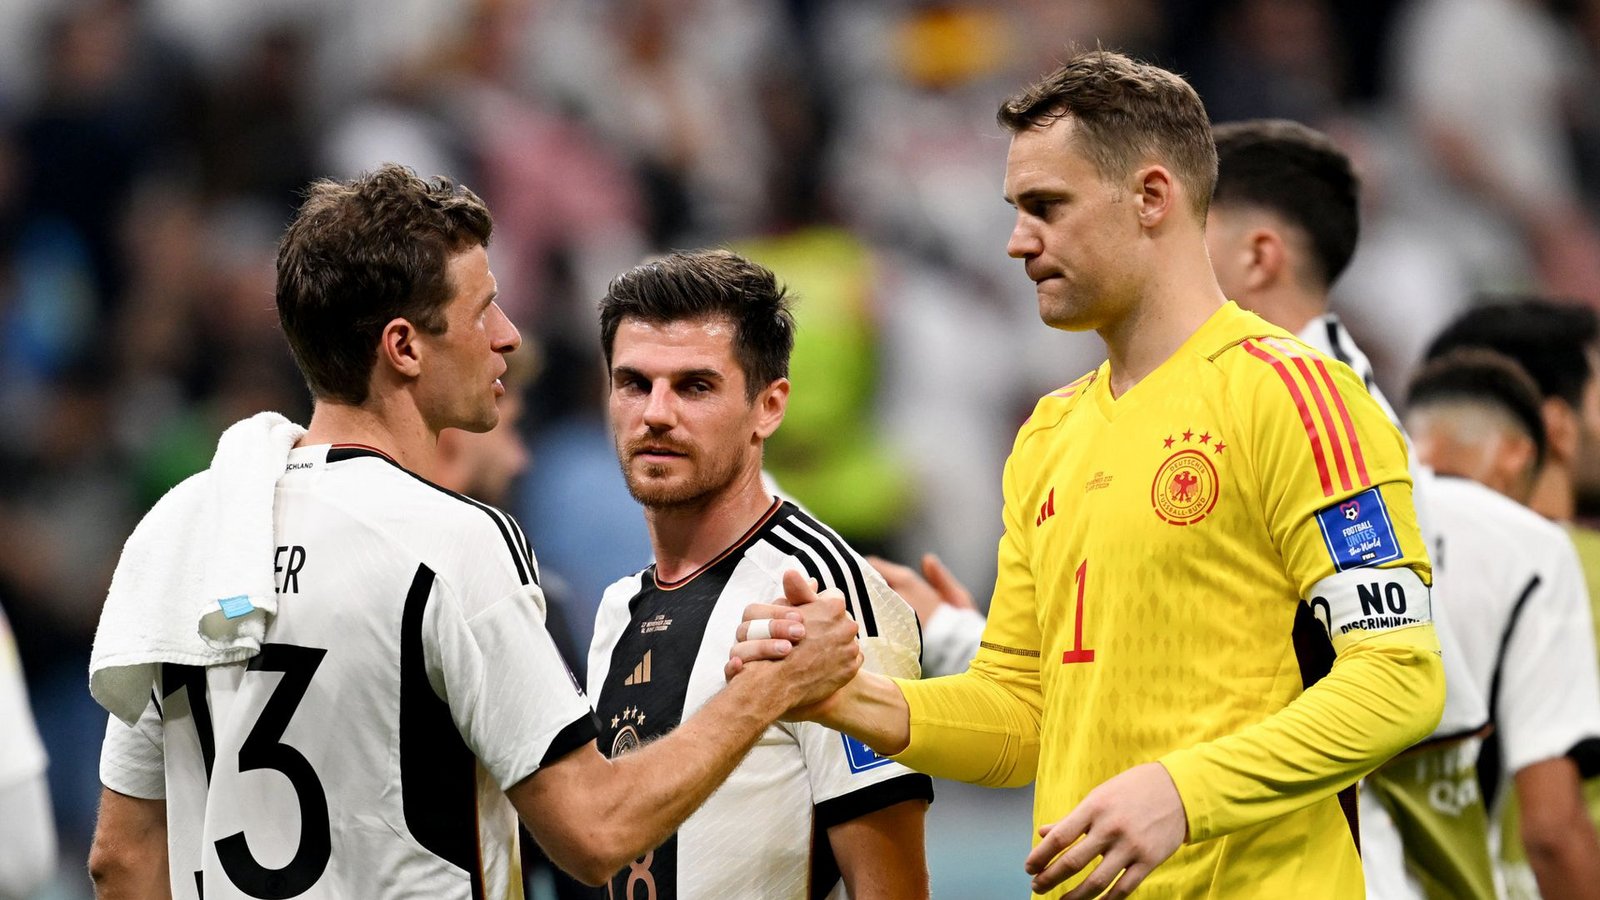 Der eine könnte zurücktreten, der andere will weitermachen: Thomas Müller (links) und Torwart Manuel NeuerFoto: dpa/Federico Gambarini